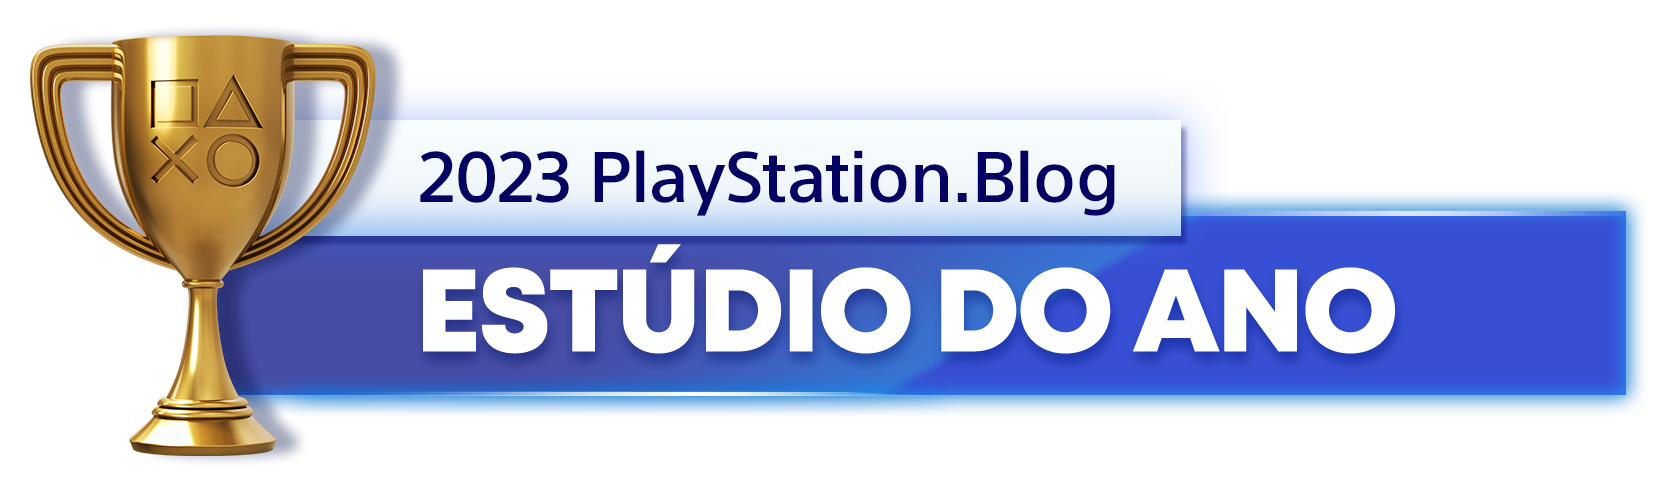  "Troféu de Ouro para o vencedor da categoria Estúdio do Ano de 2023 do PlayStation Blog"